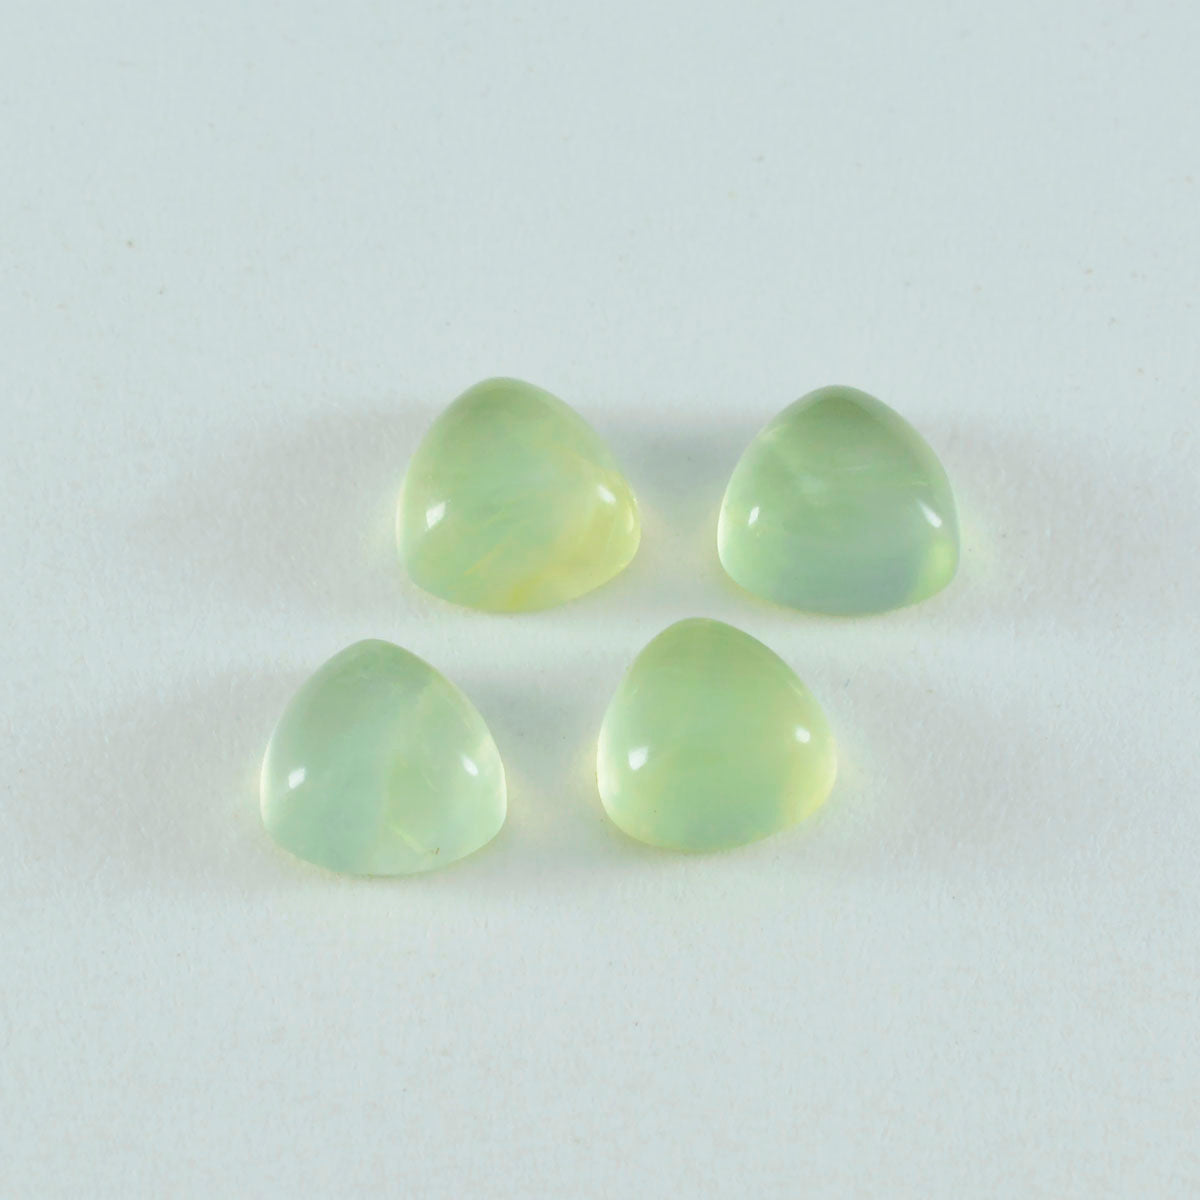 riyogems 1 pieza cabujón de prehnita verde 14x14 mm forma de billón piedra preciosa suelta de calidad dulce